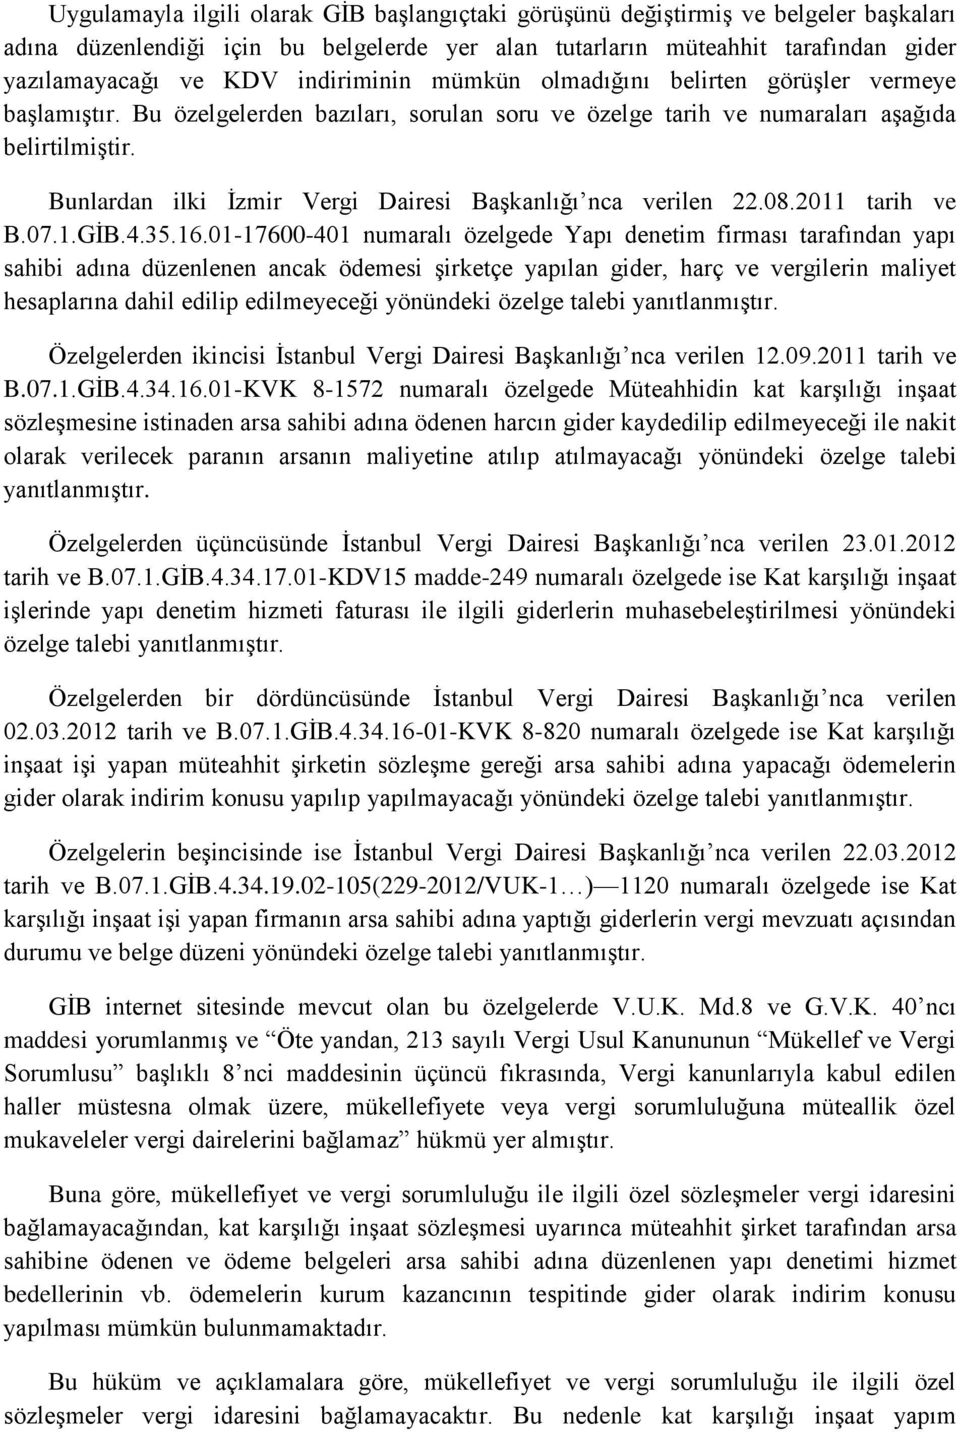 Bunlardan ilki İzmir Vergi Dairesi Başkanlığı nca verilen 22.08.2011 tarih ve B.07.1.GİB.4.35.16.